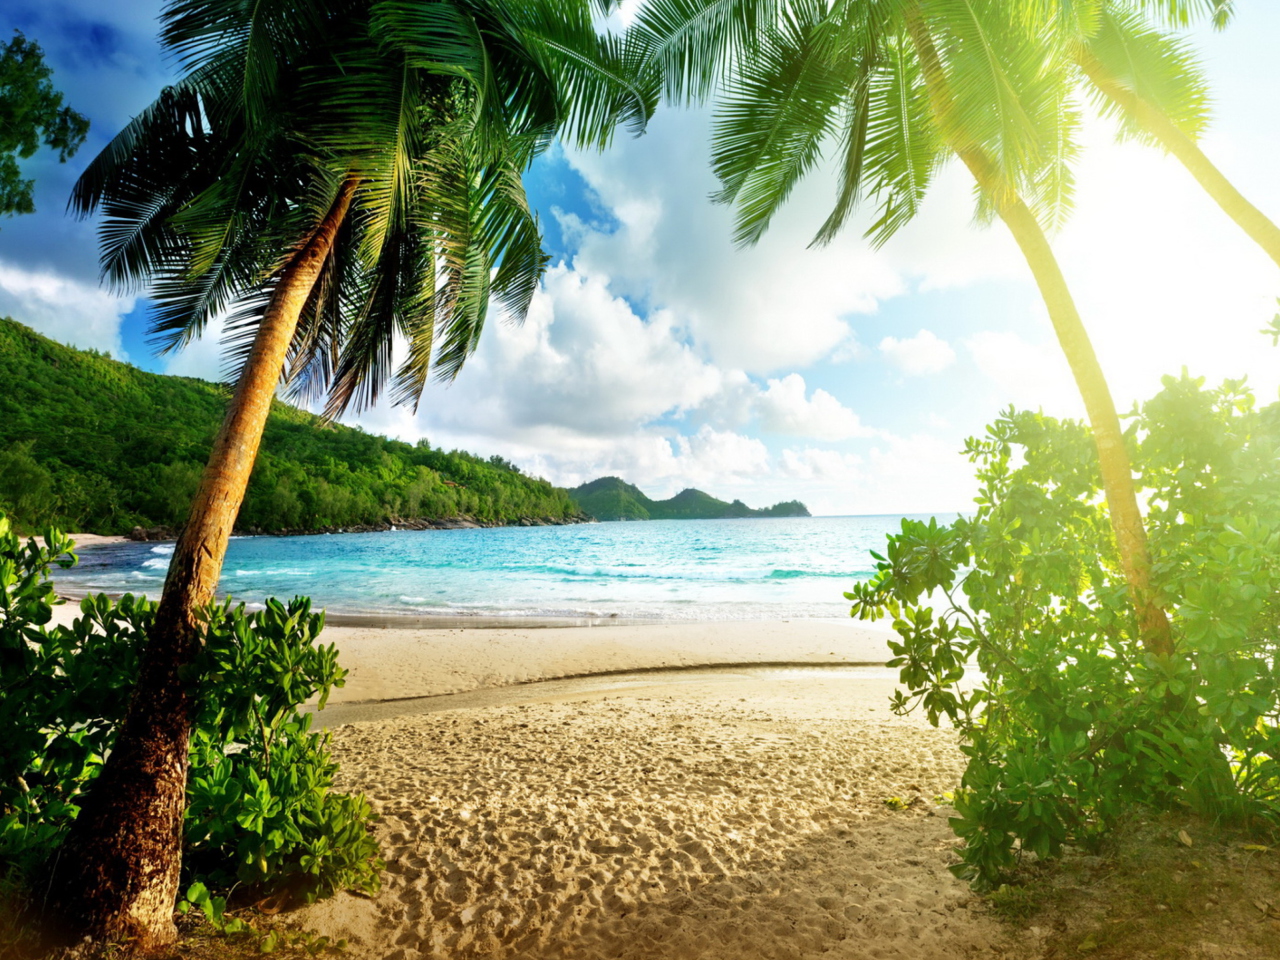 Sfondi Tropical Beach In Palau 1280x960